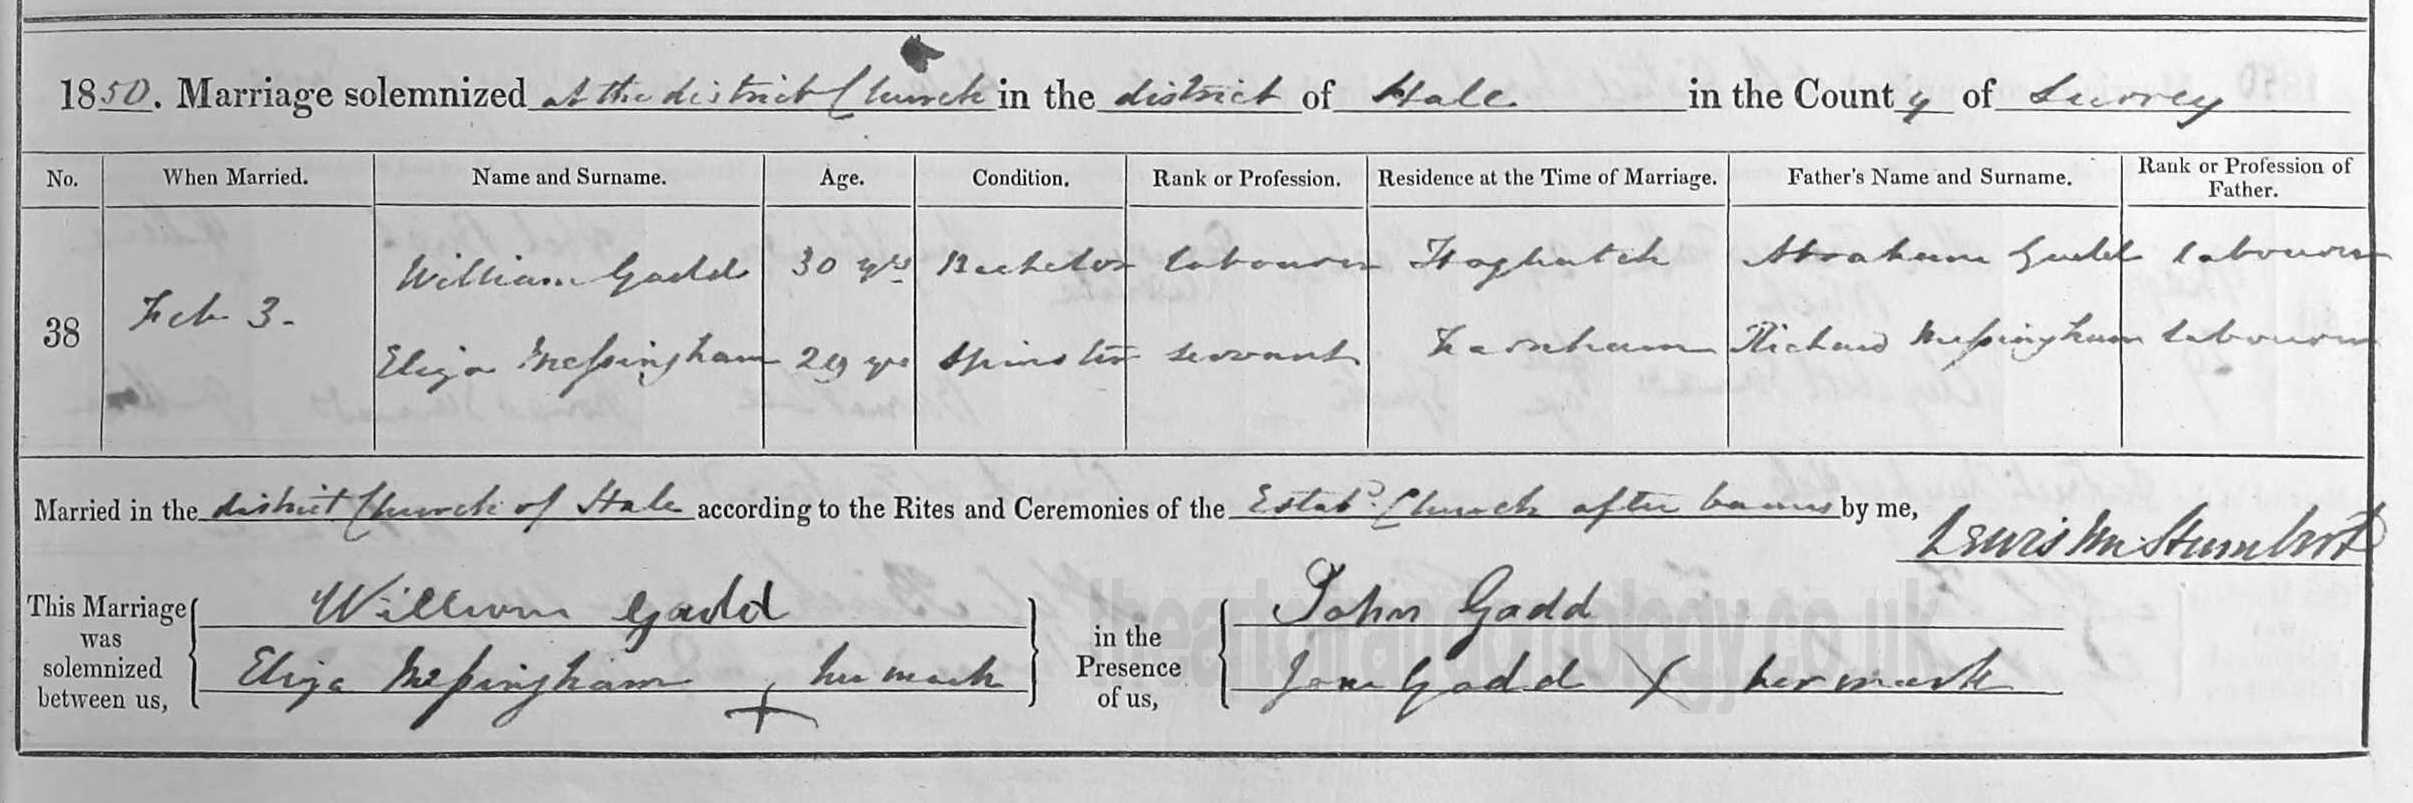 William Gadd & Eliza Messingham marriage 1850